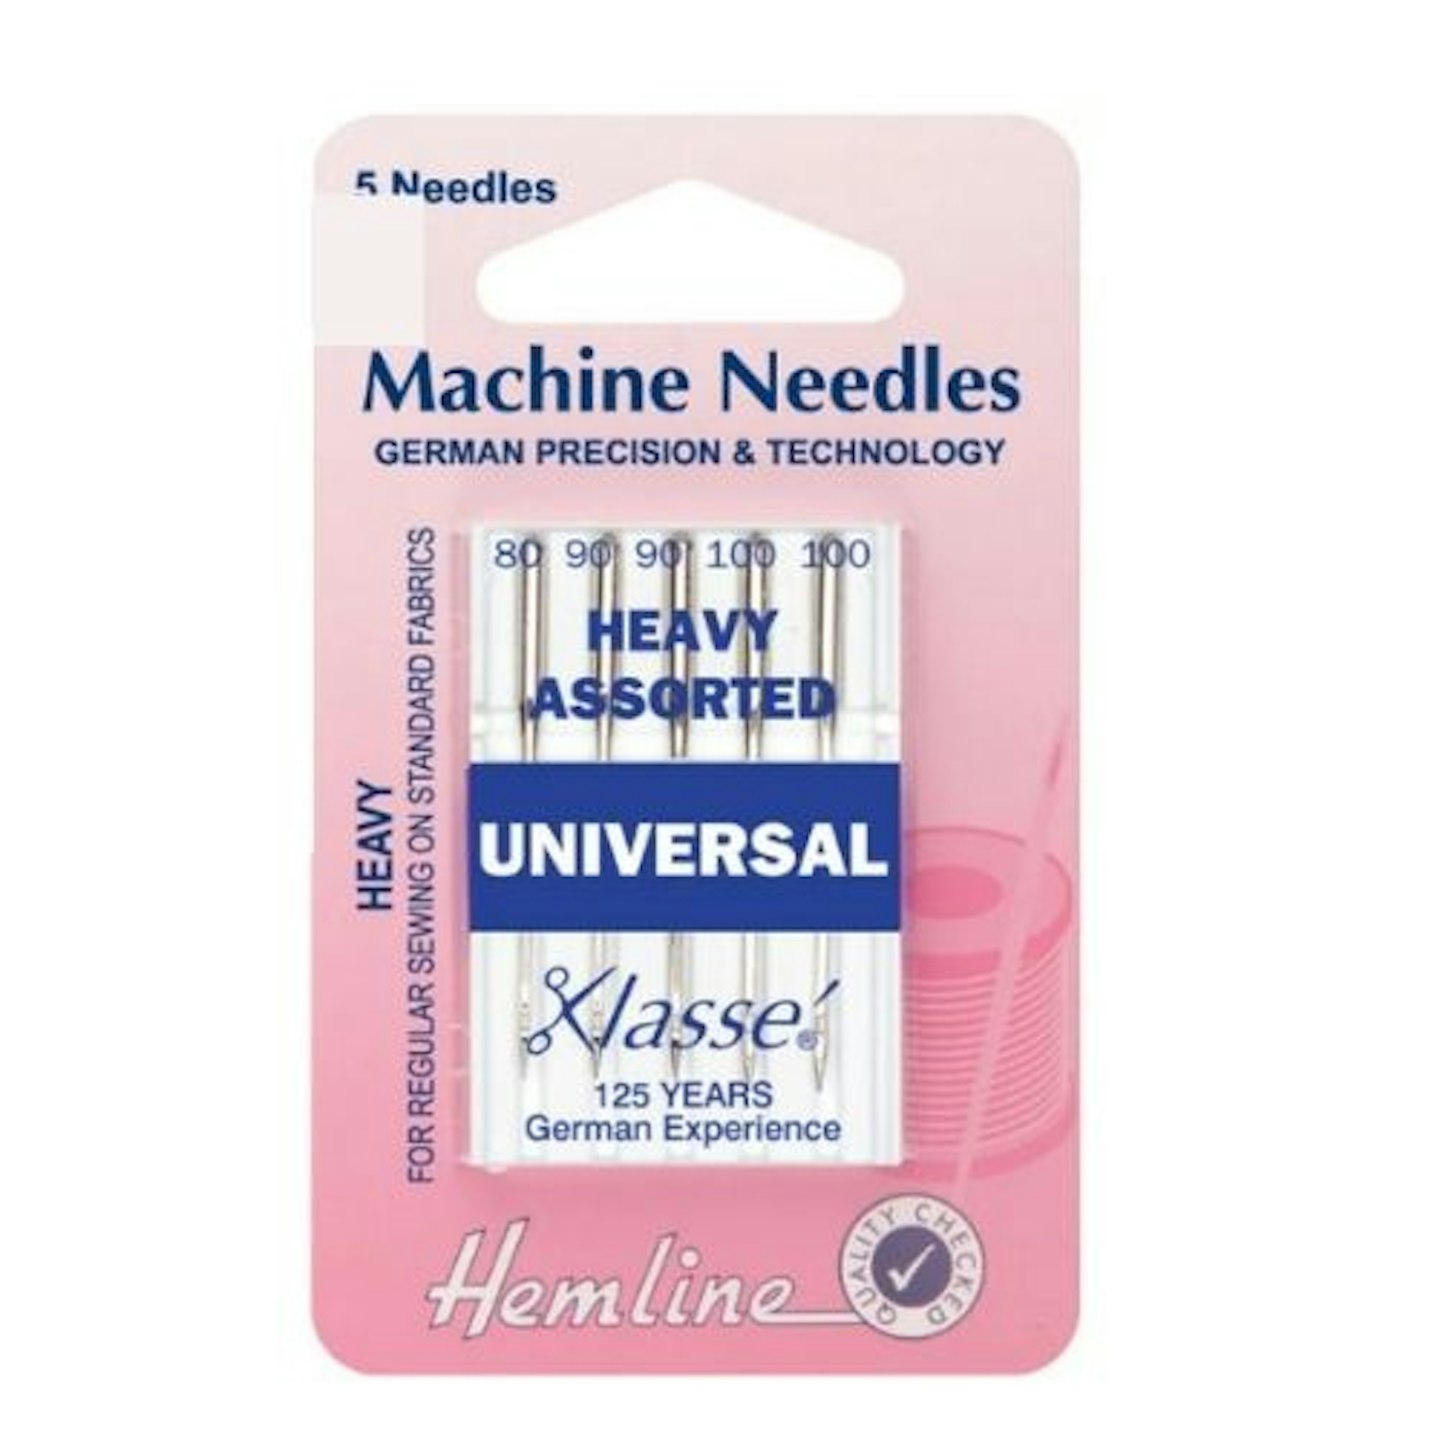 Hemline Assorted Heavy Machine Needle 5 Pack